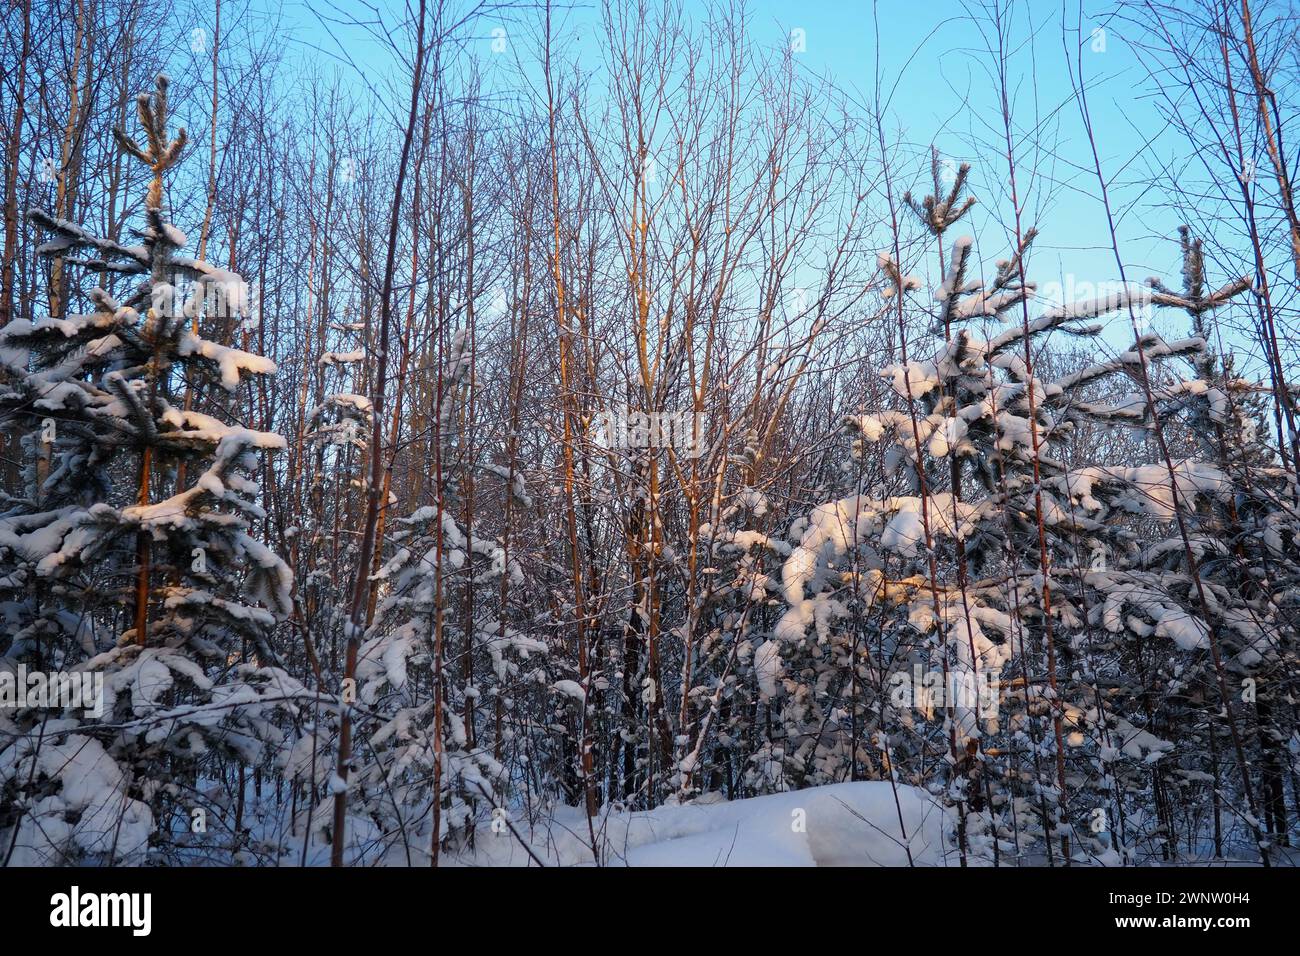 Forêt de pins en hiver pendant la journée en cas de gel sévère, Carélie. Neige sur les branches de conifères. Anticyclone par temps ensoleillé givré. Pinus pin sylvestre Banque D'Images